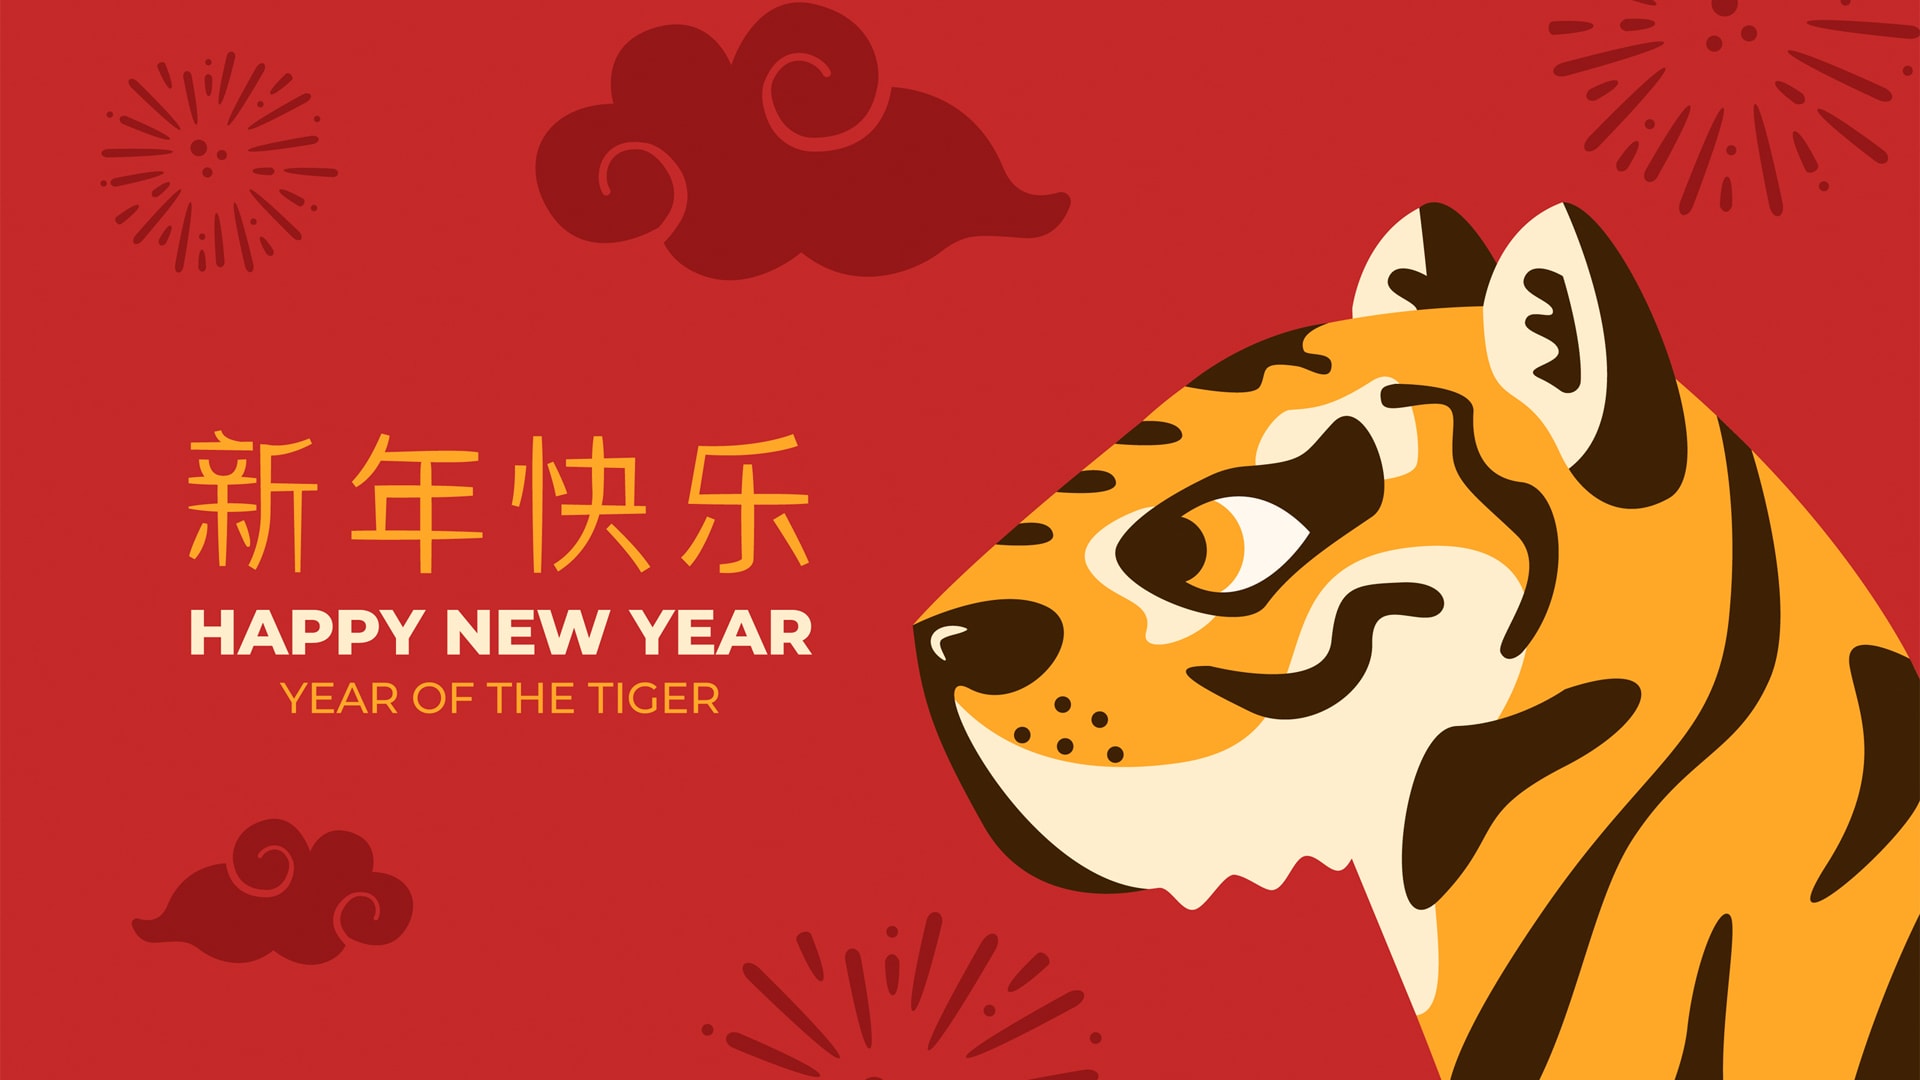 虎年新年快乐卡通图案红色背景电脑壁纸